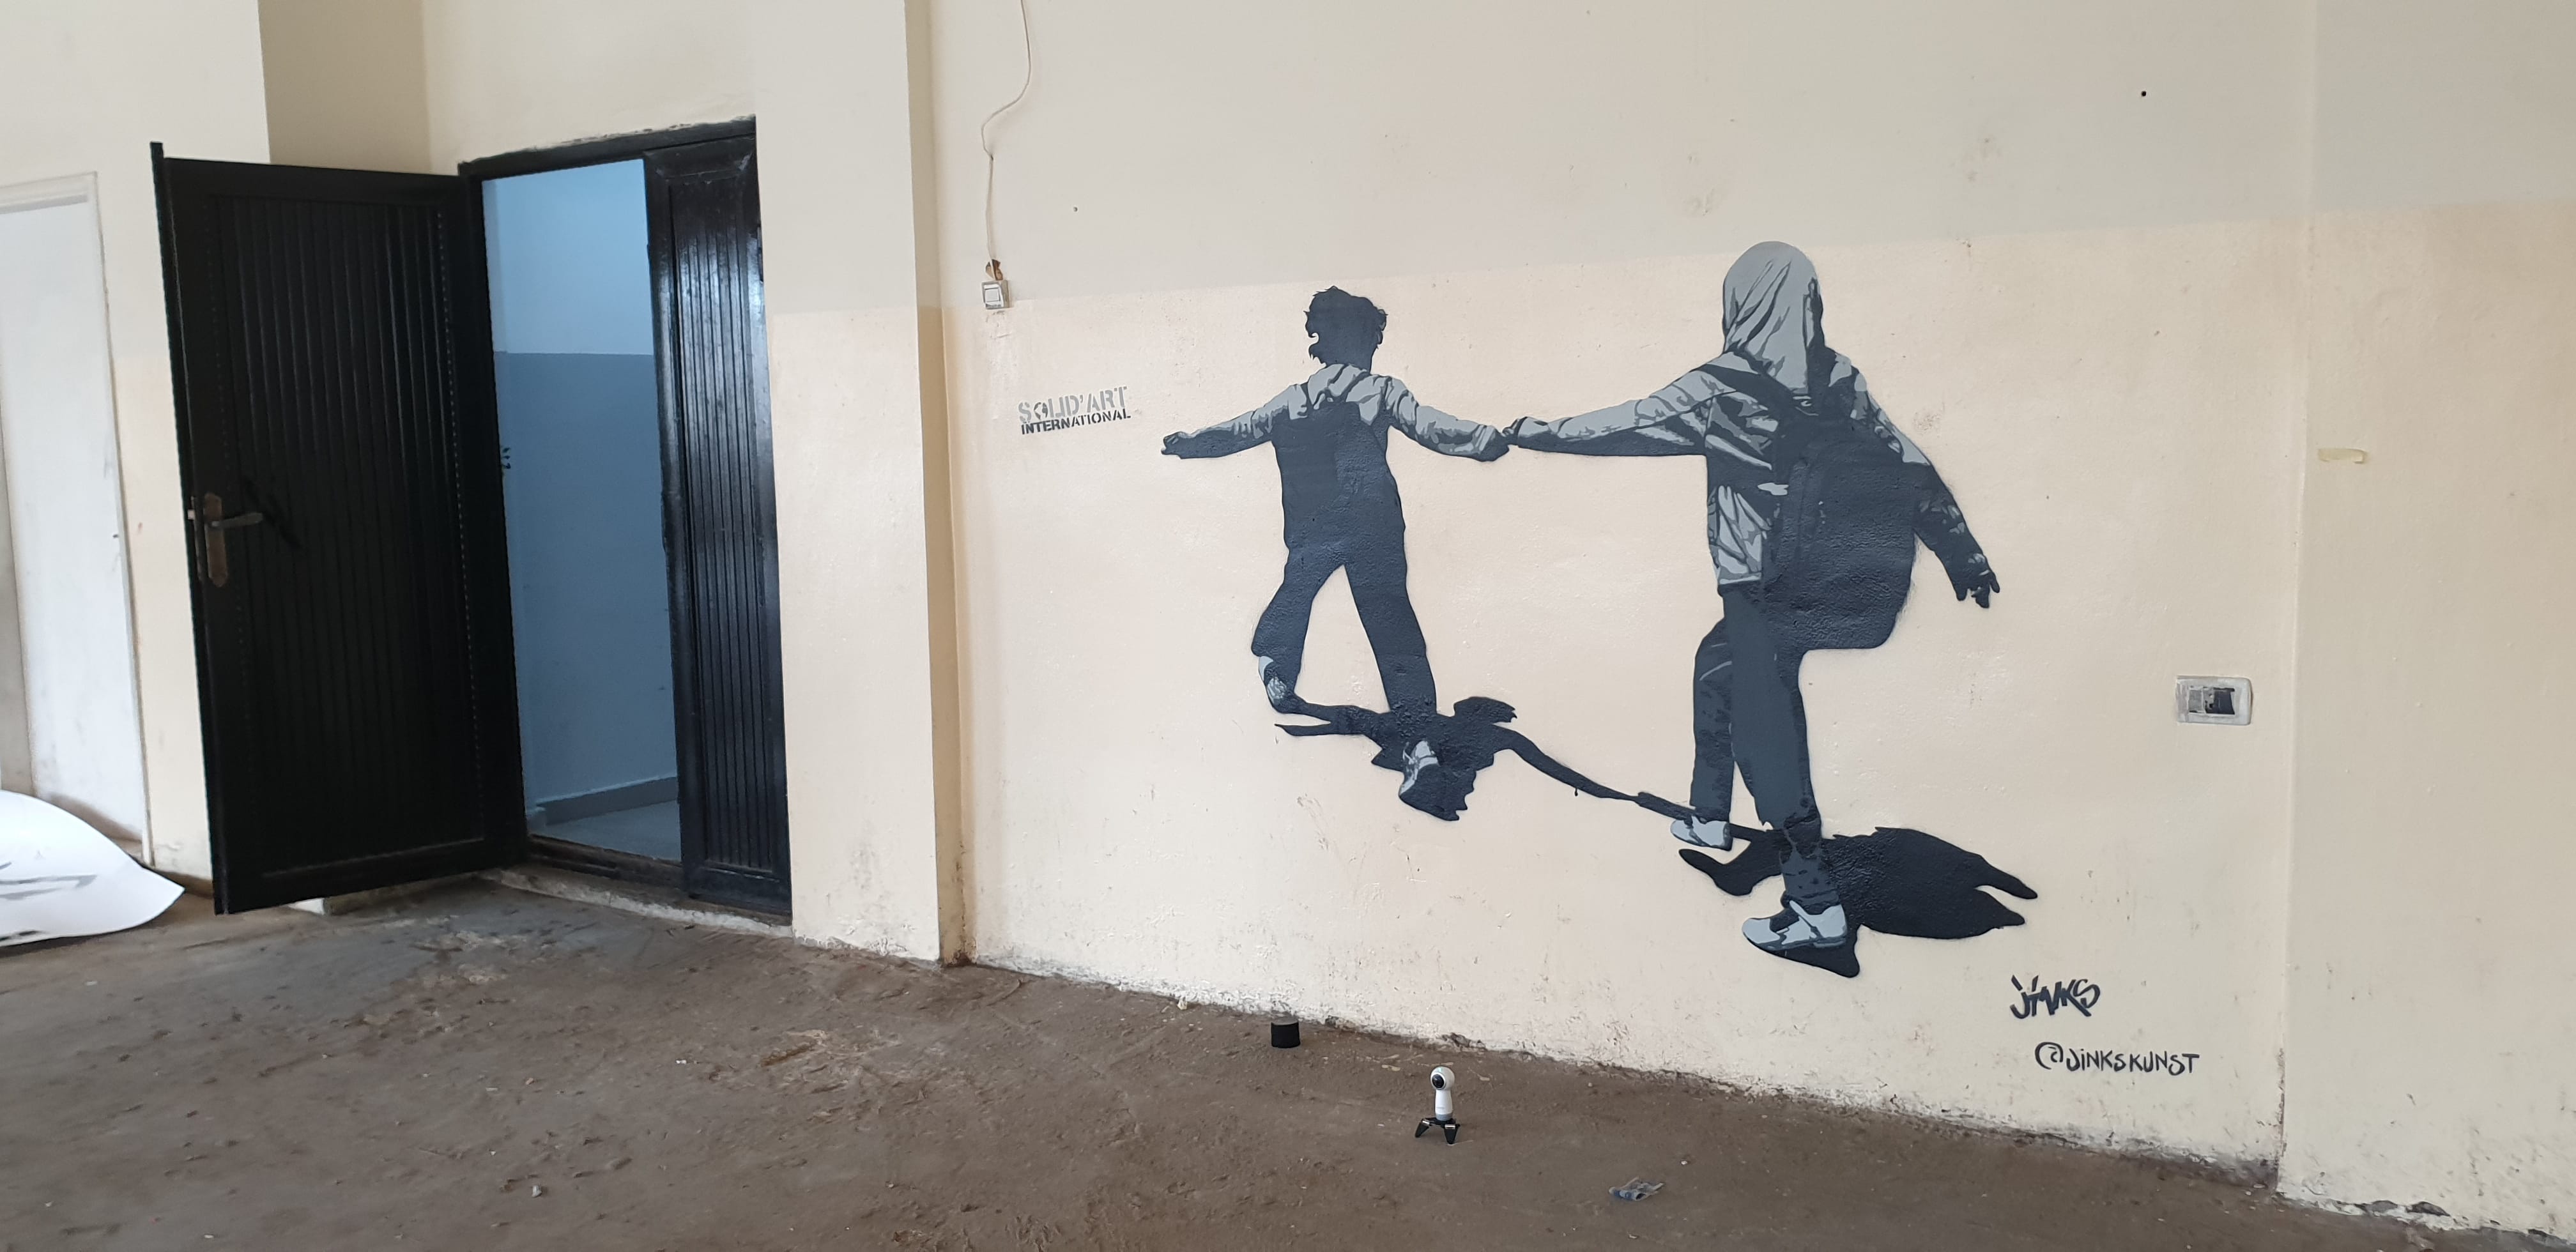 Graffiti 4654 Shatila School de Jinks Kunst capturé par Jinks Kunst à Bayrut Lebanon